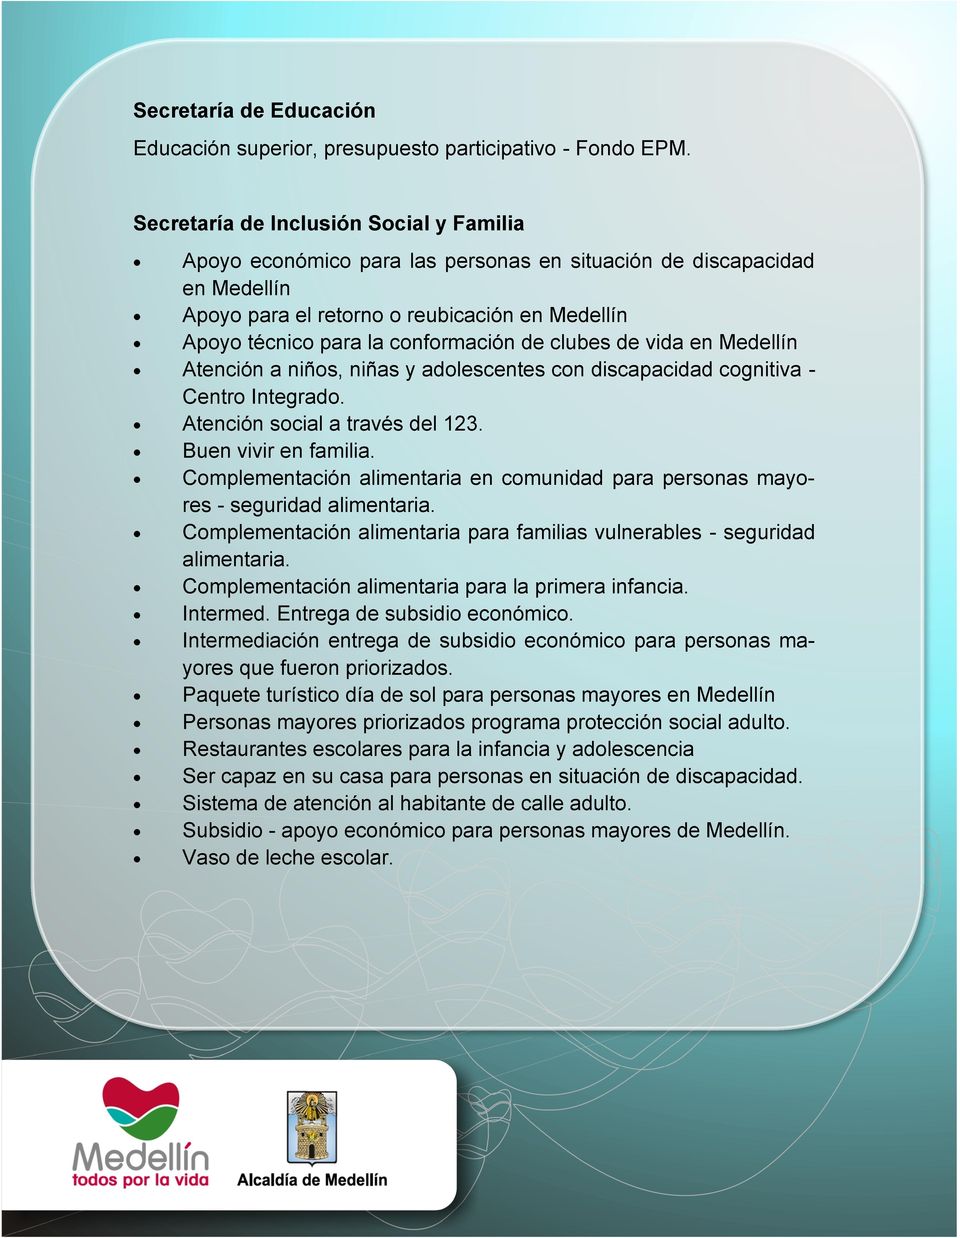 de clubes de vida en Medellín Atención a niños, niñas y adolescentes con discapacidad cognitiva - Centro Integrado. Atención social a través del 123. Buen vivir en familia.